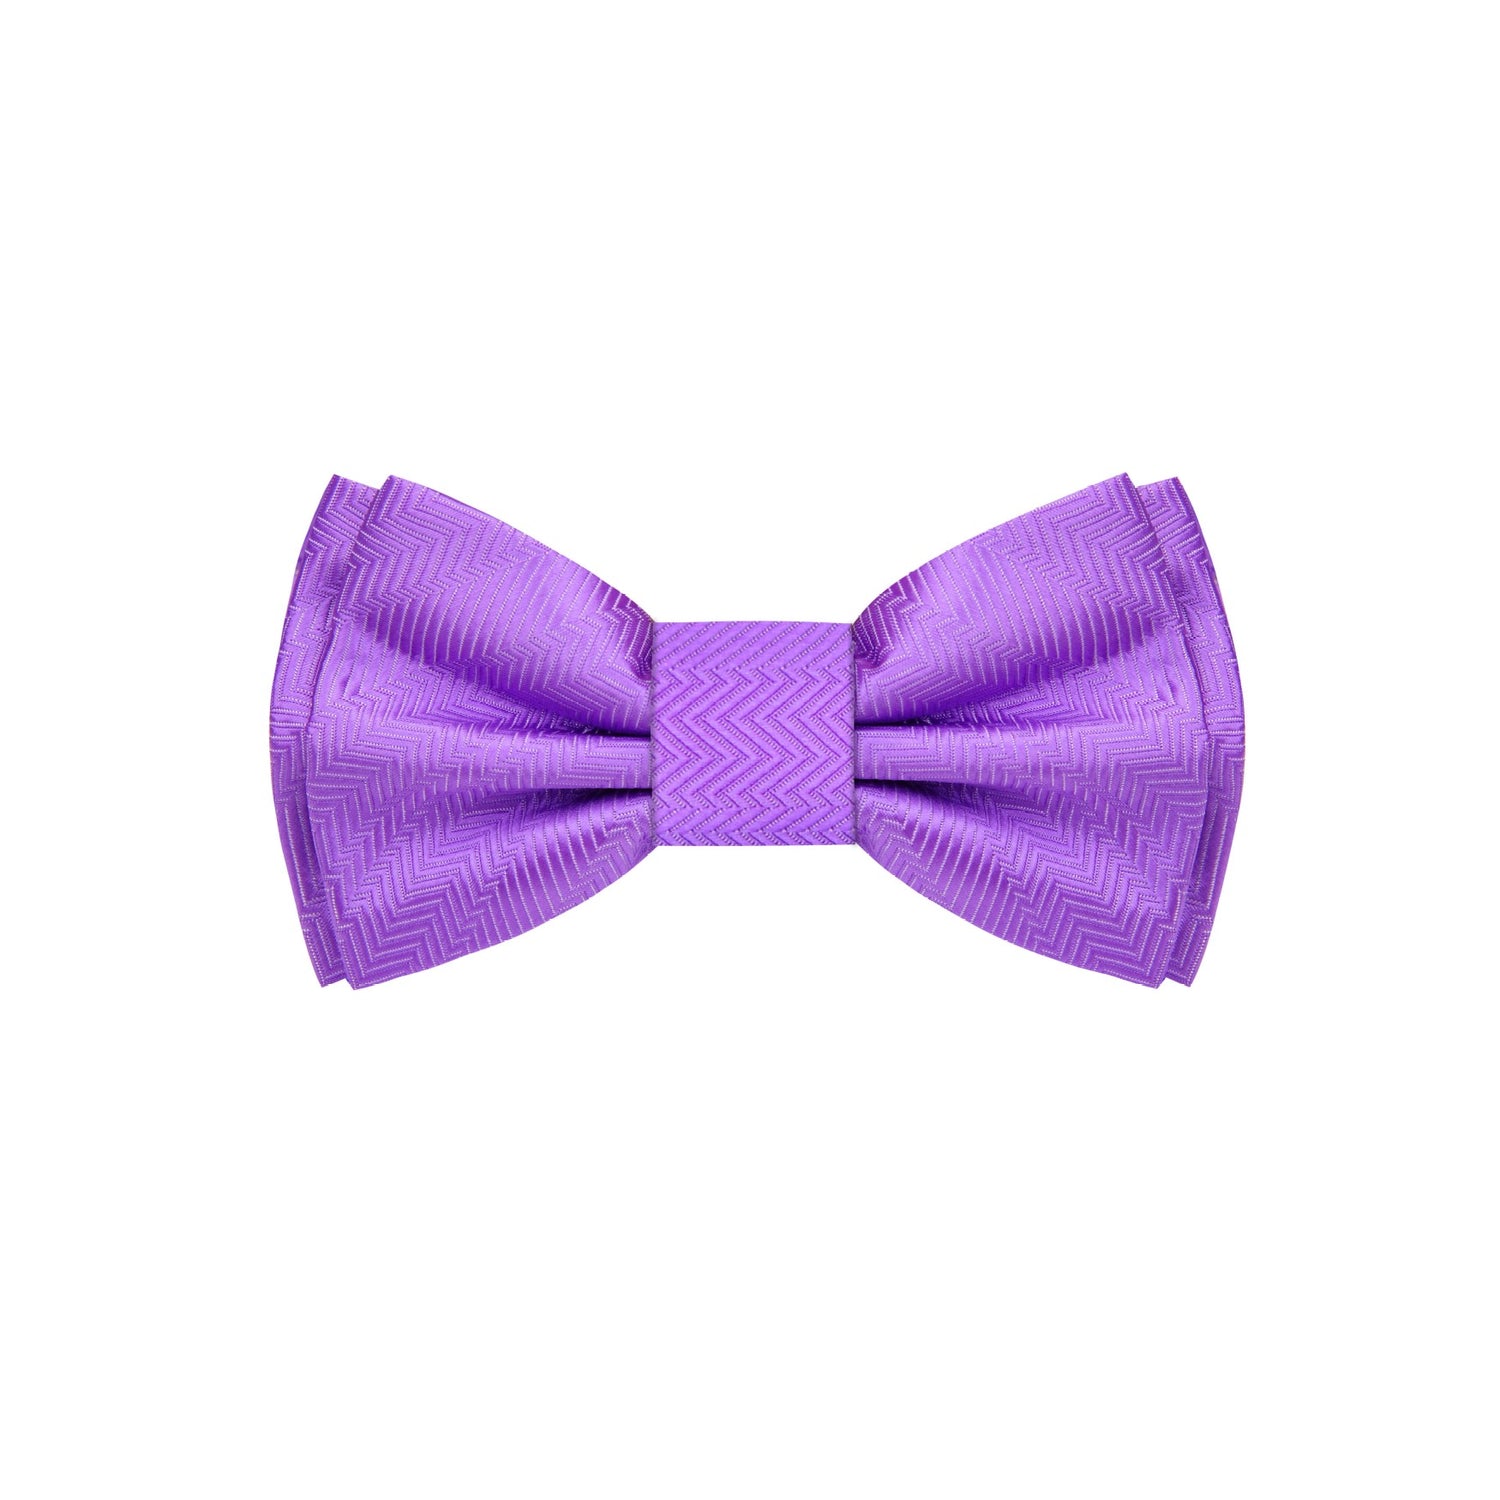 An Amethyst Purple Solid Pattern Self Tie Bow Tie 